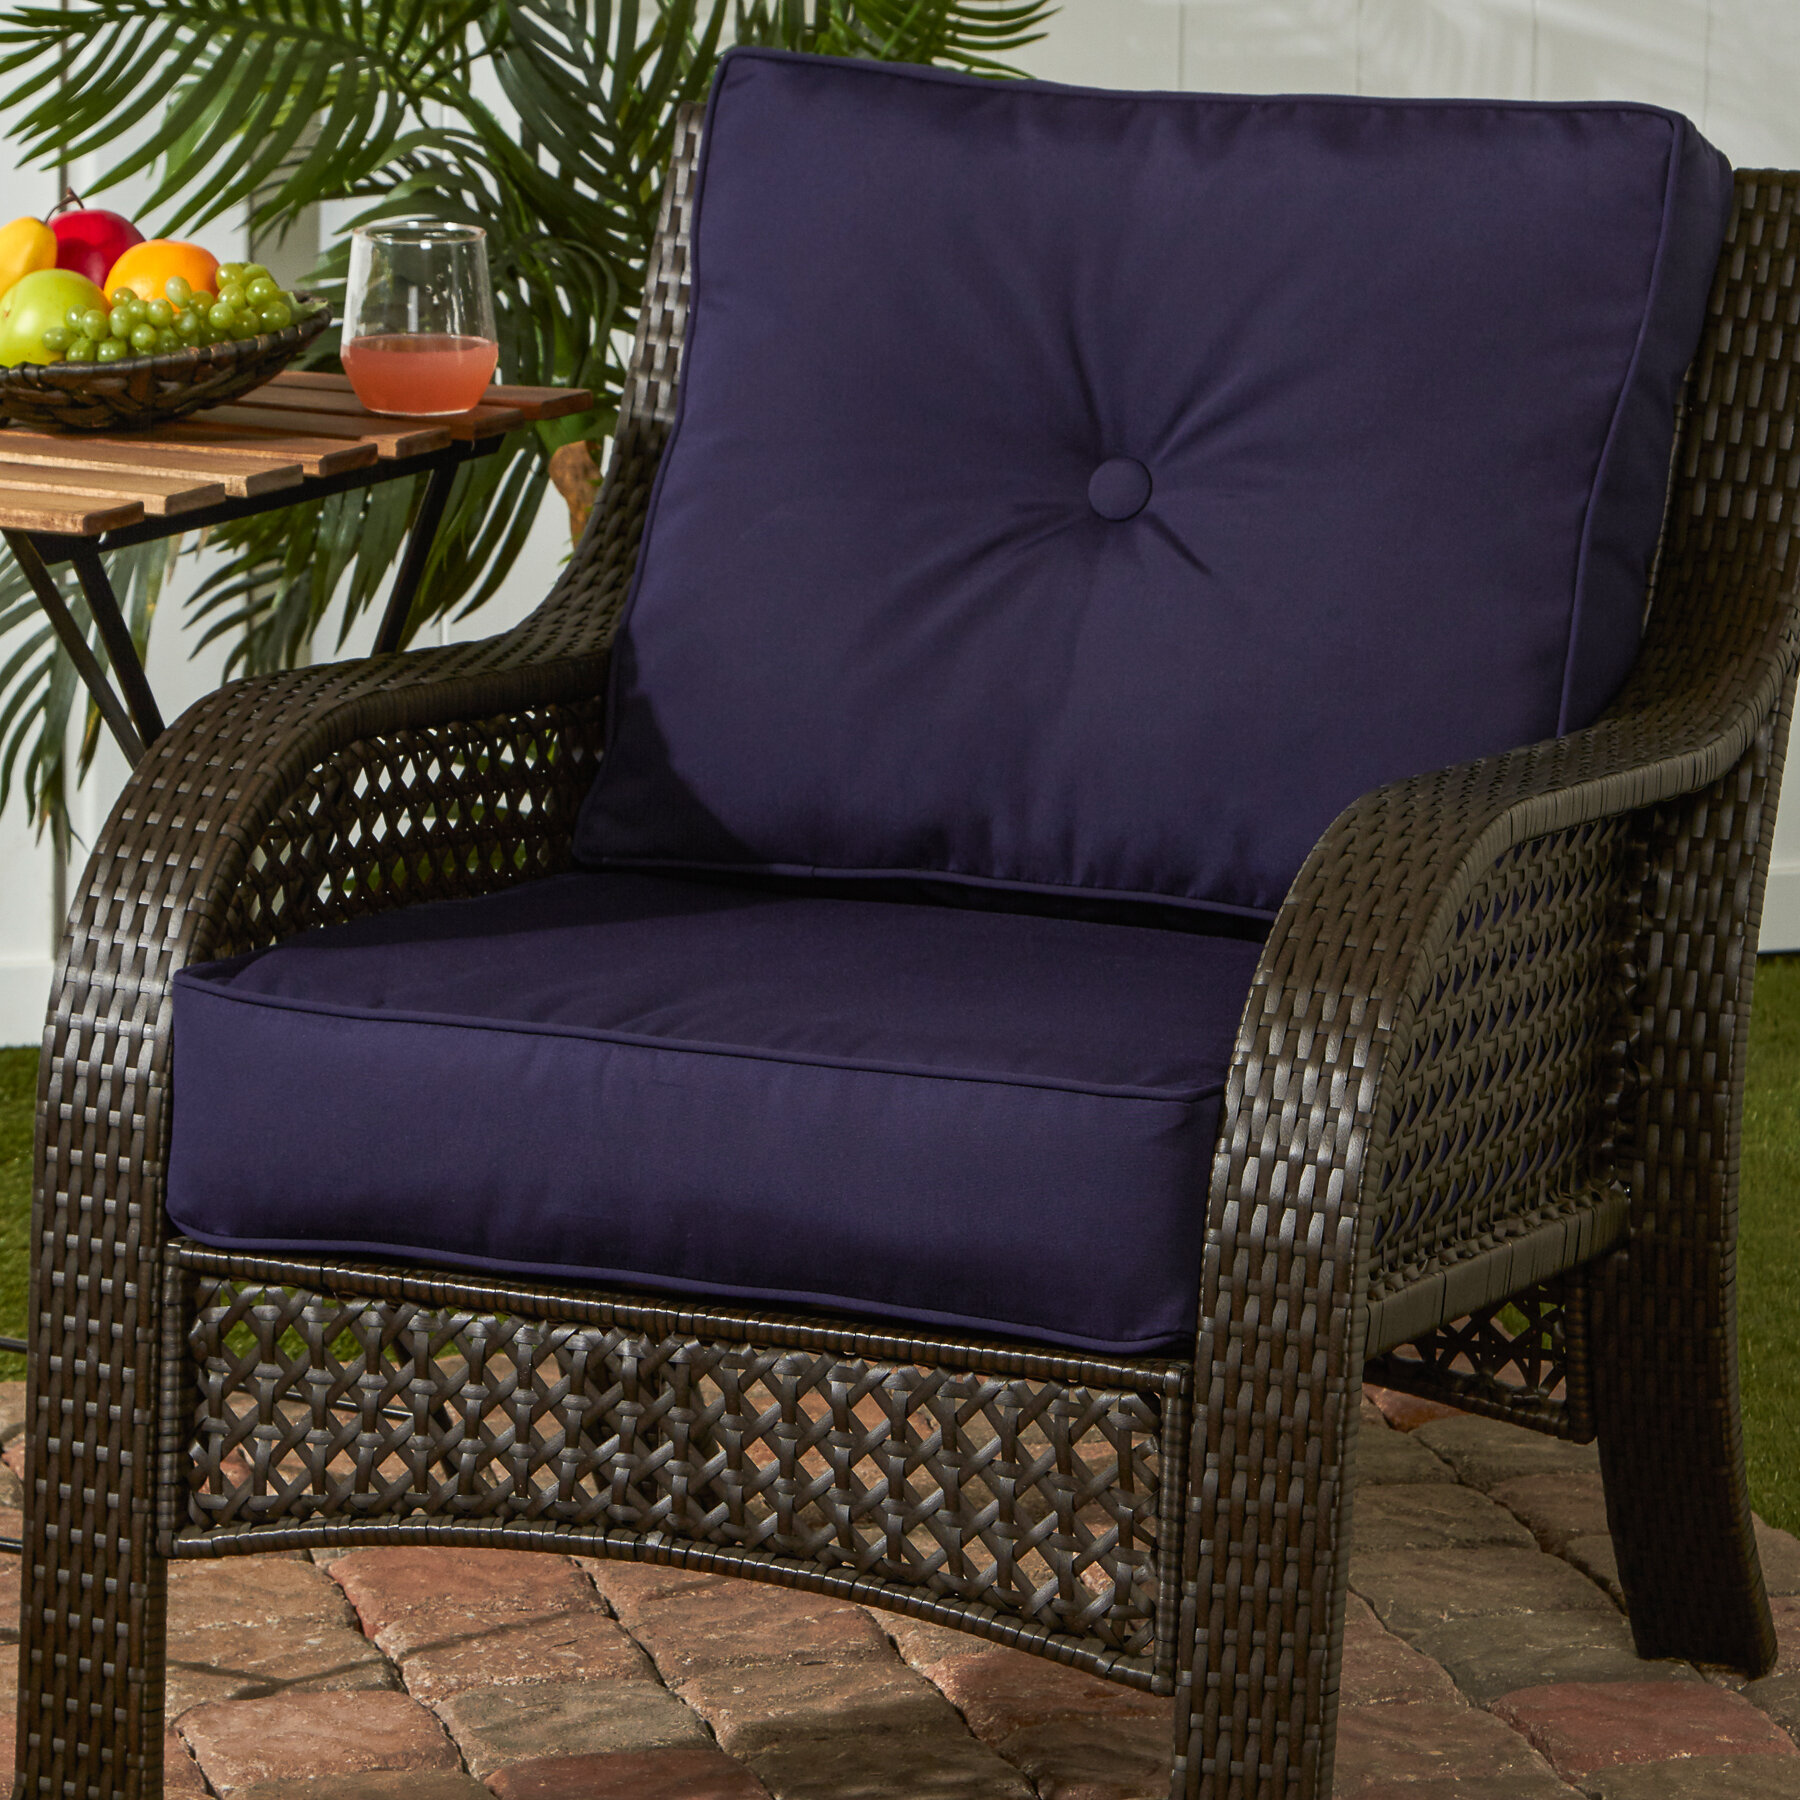 https://assets.wfcdn.com/im/83174979/compr-r85/3681/36817587/royzell-sunbrella-outdoor-deep-seat-chair-cushion.jpg